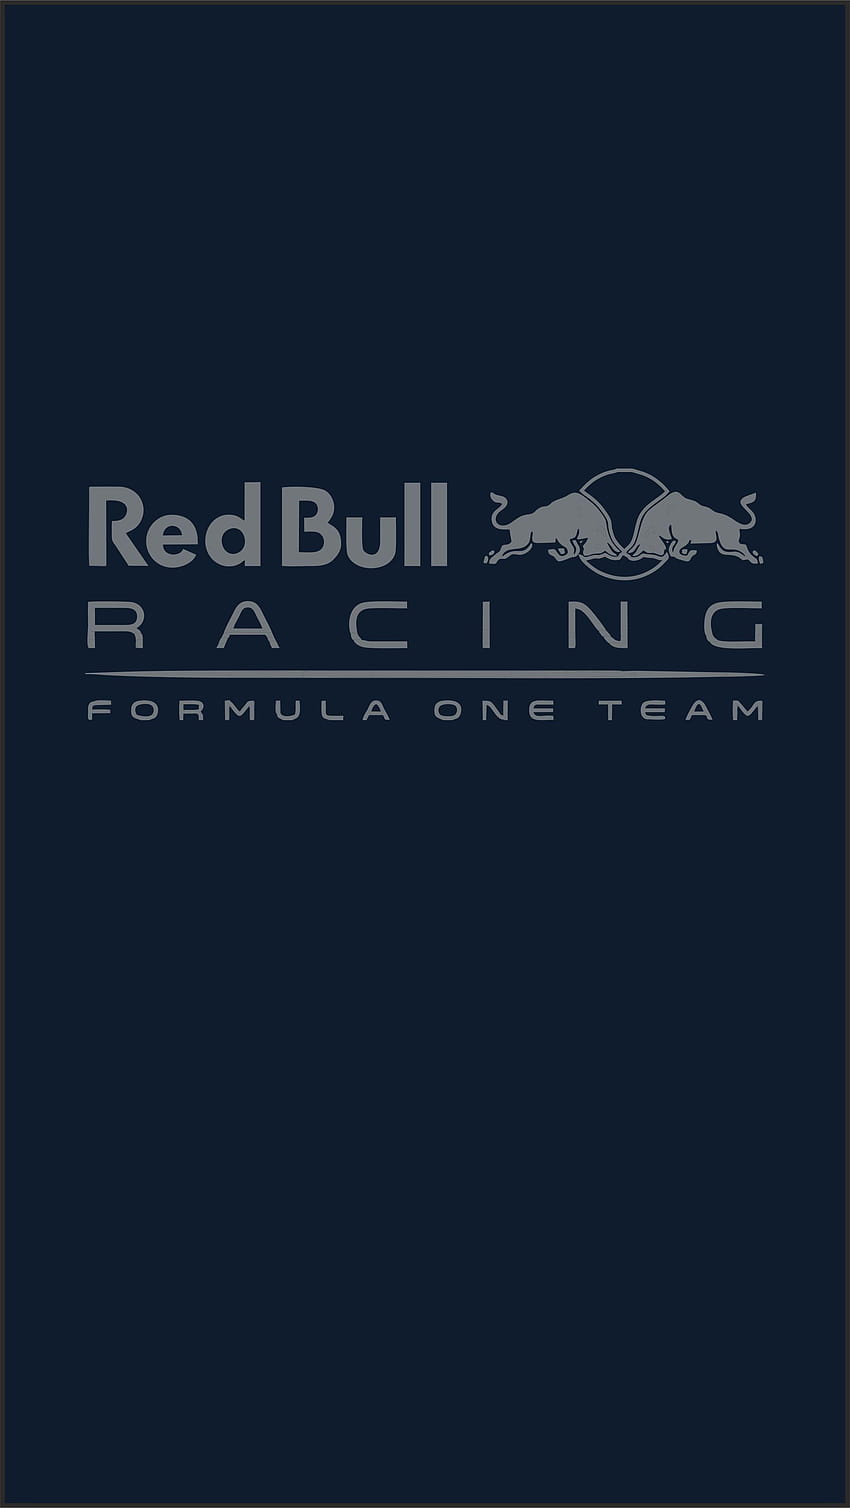 Red Bull Racing Iphone HD phone wallpaper